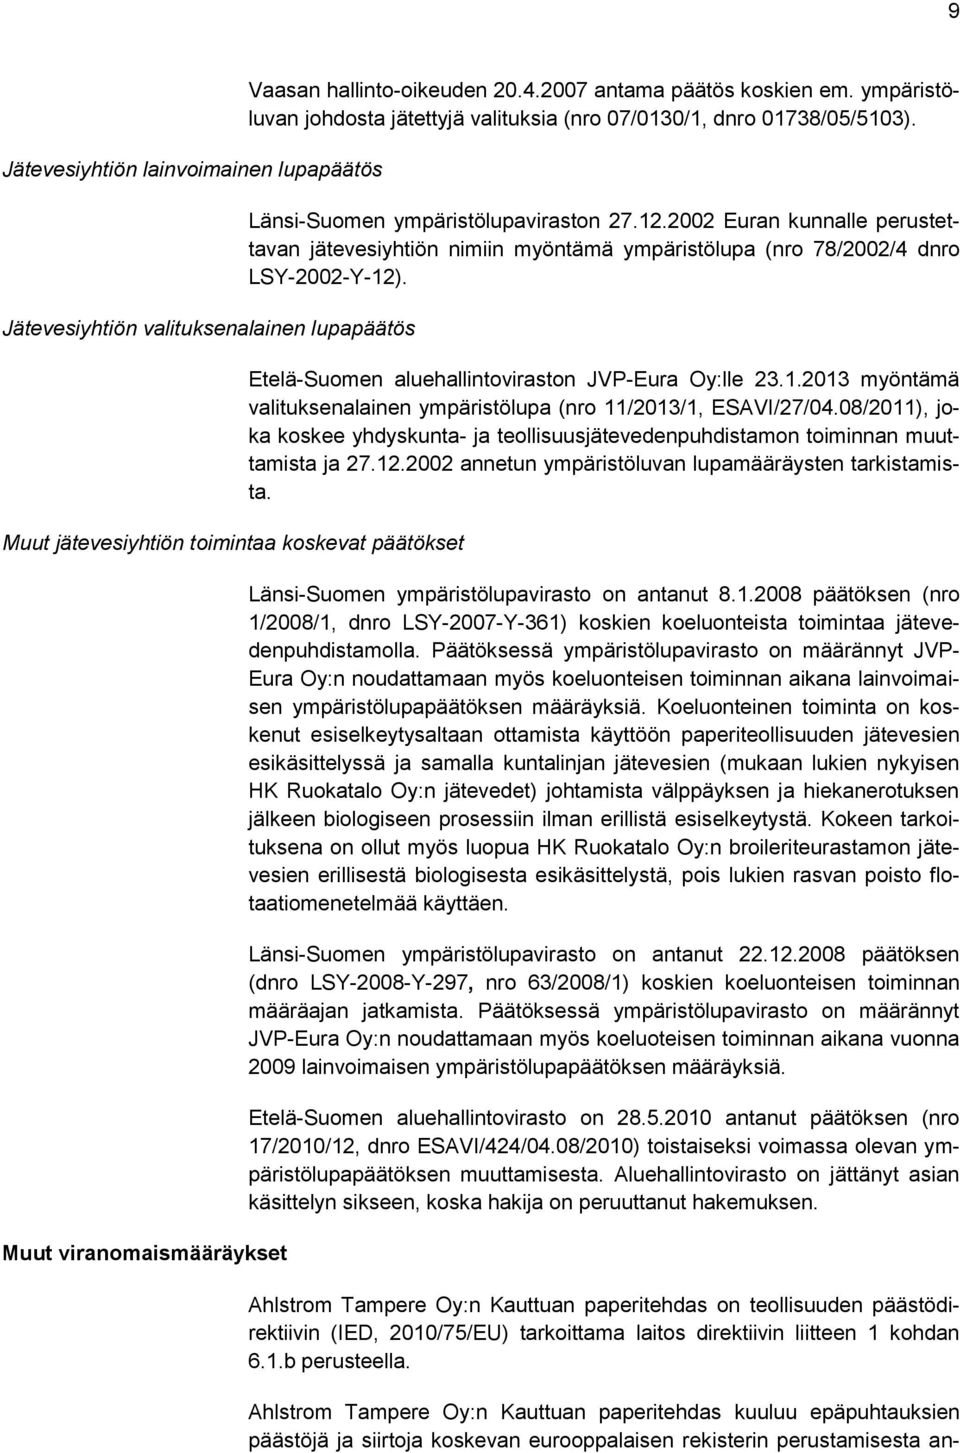 2002 Euran kunnalle perustettavan jätevesiyhtiön nimiin myöntämä ympäristölupa (nro 78/2002/4 dnro LSY-2002-Y-12). Etelä-Suomen aluehallintoviraston JVP-Eura Oy:lle 23.1.2013 myöntämä valituksenalainen ympäristölupa (nro 11/2013/1, ESAVI/27/04.